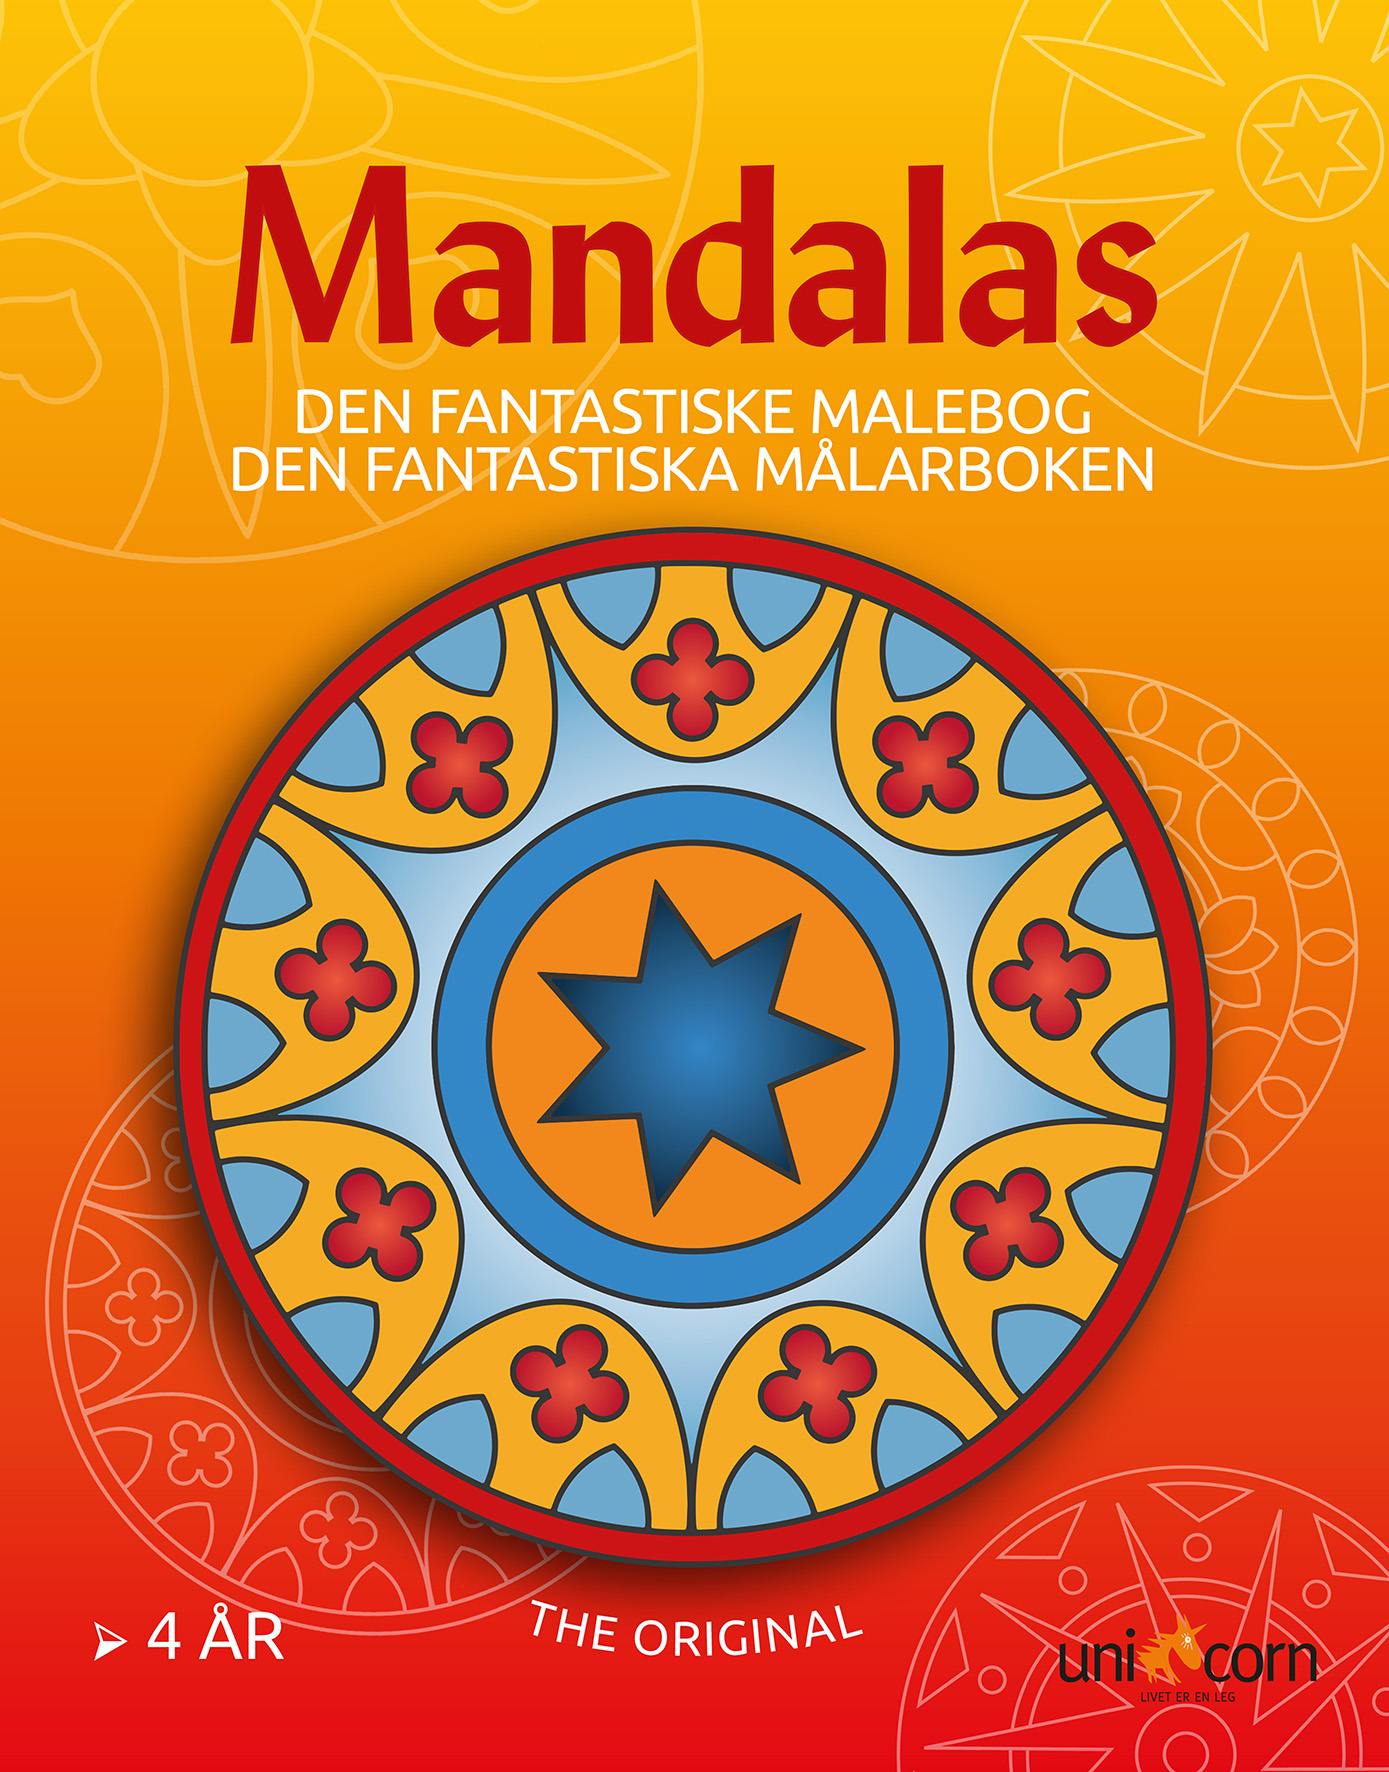 [8100422] Målarbok Mandalas från 4 år